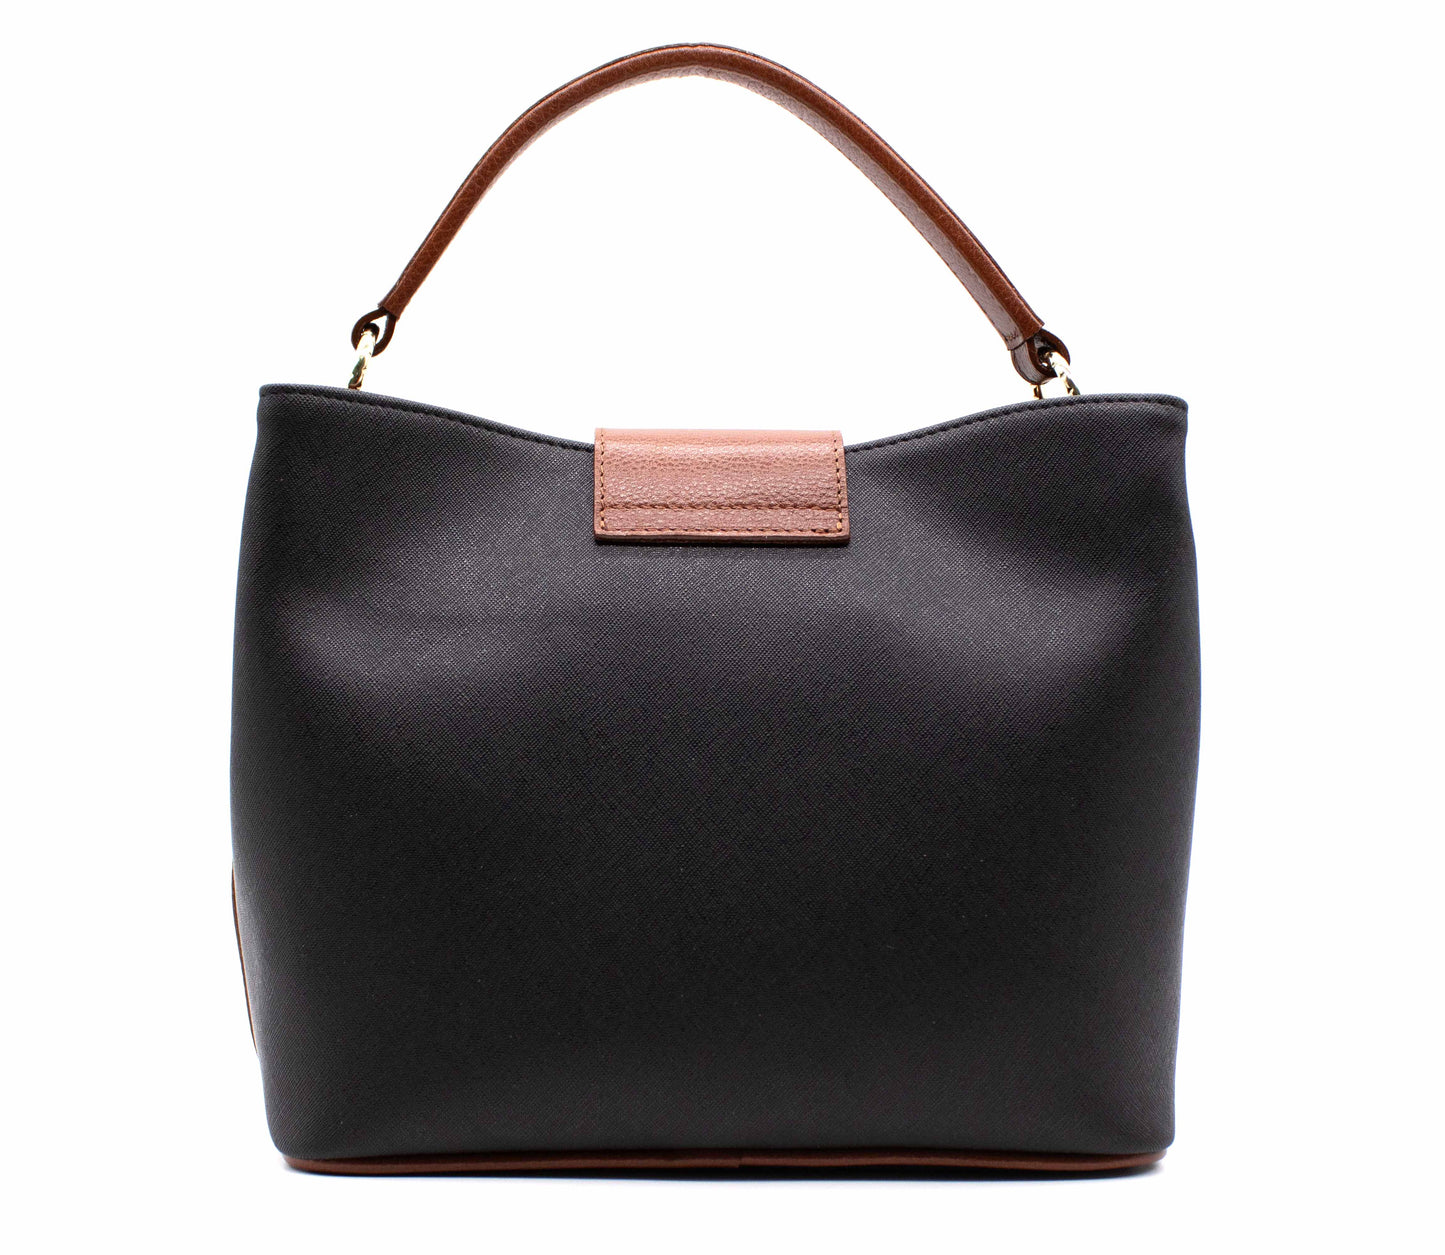 Cavalinho Unique Handbag - Black & Honey - 1826157.32.99_3